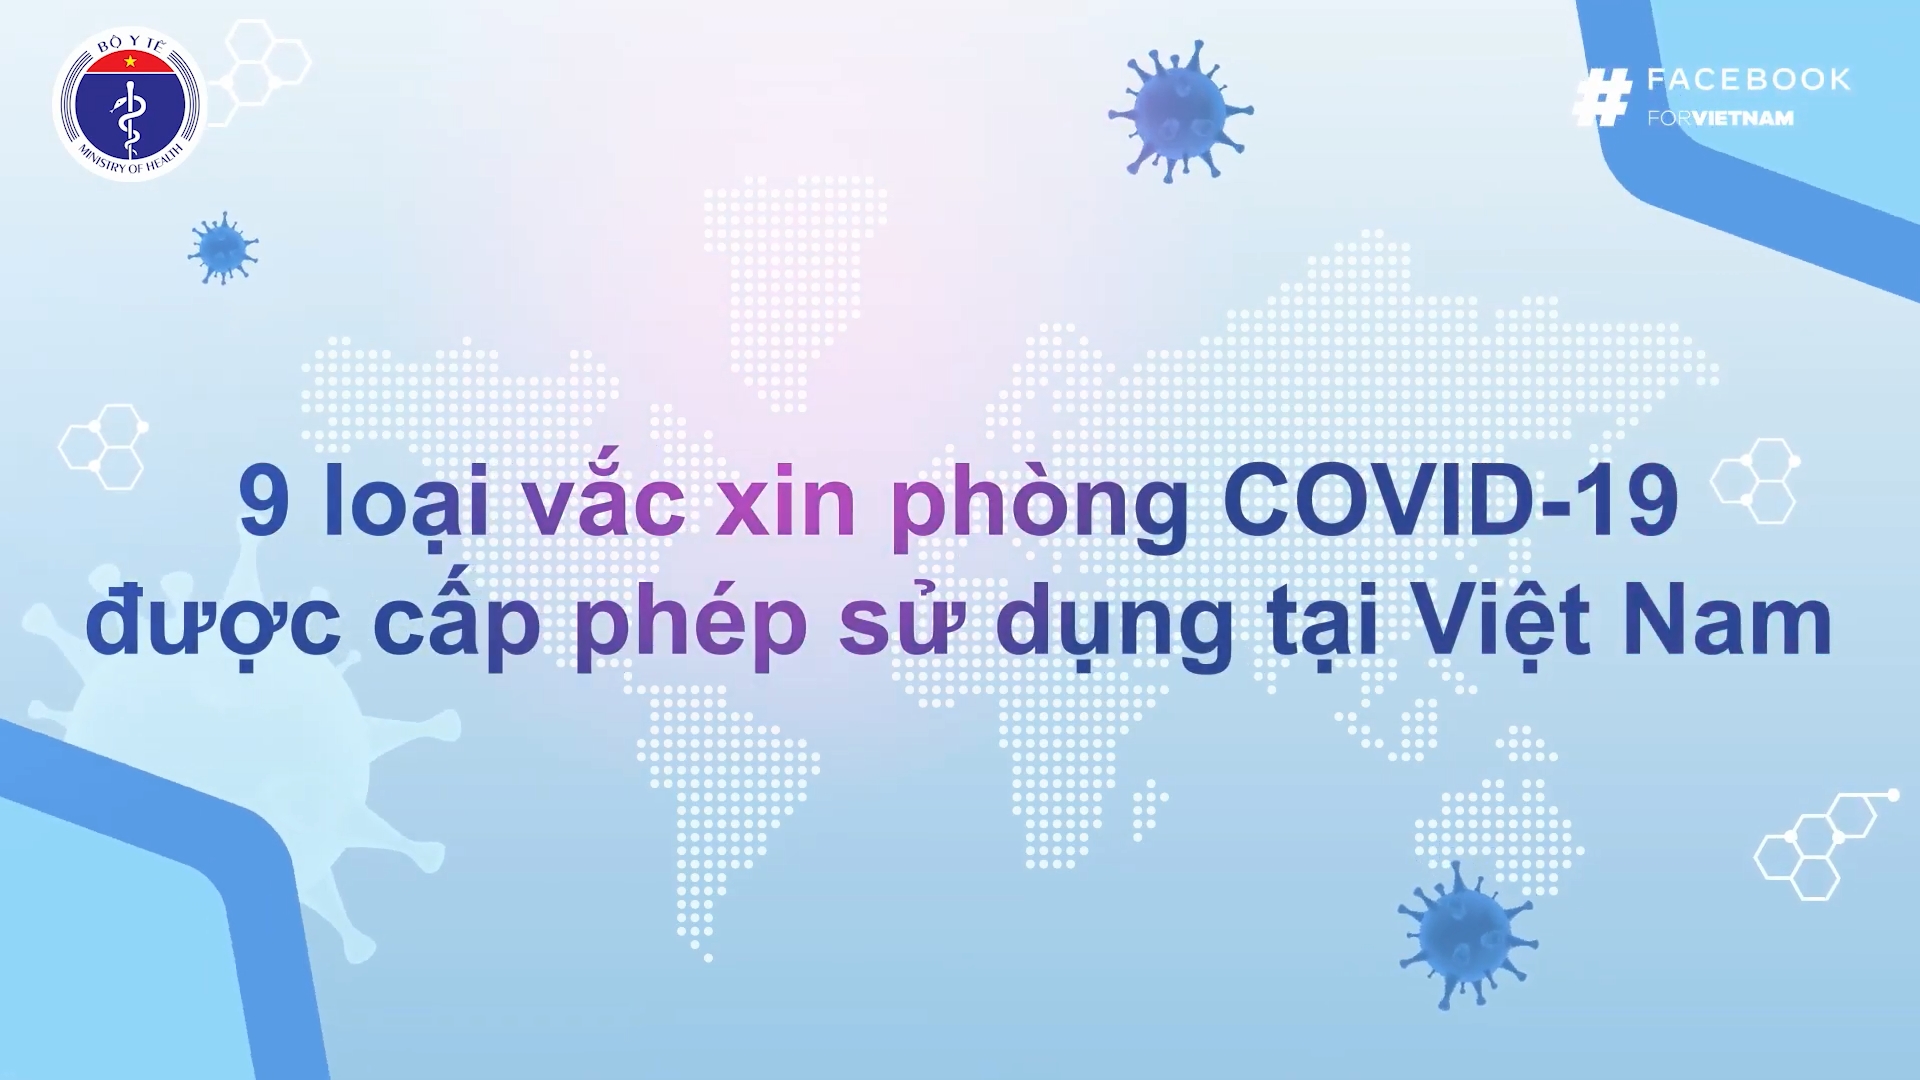 9 loại vắc xin phòng COVID19 đã được Bộ Y tế phê duyệt tại Việt Nam